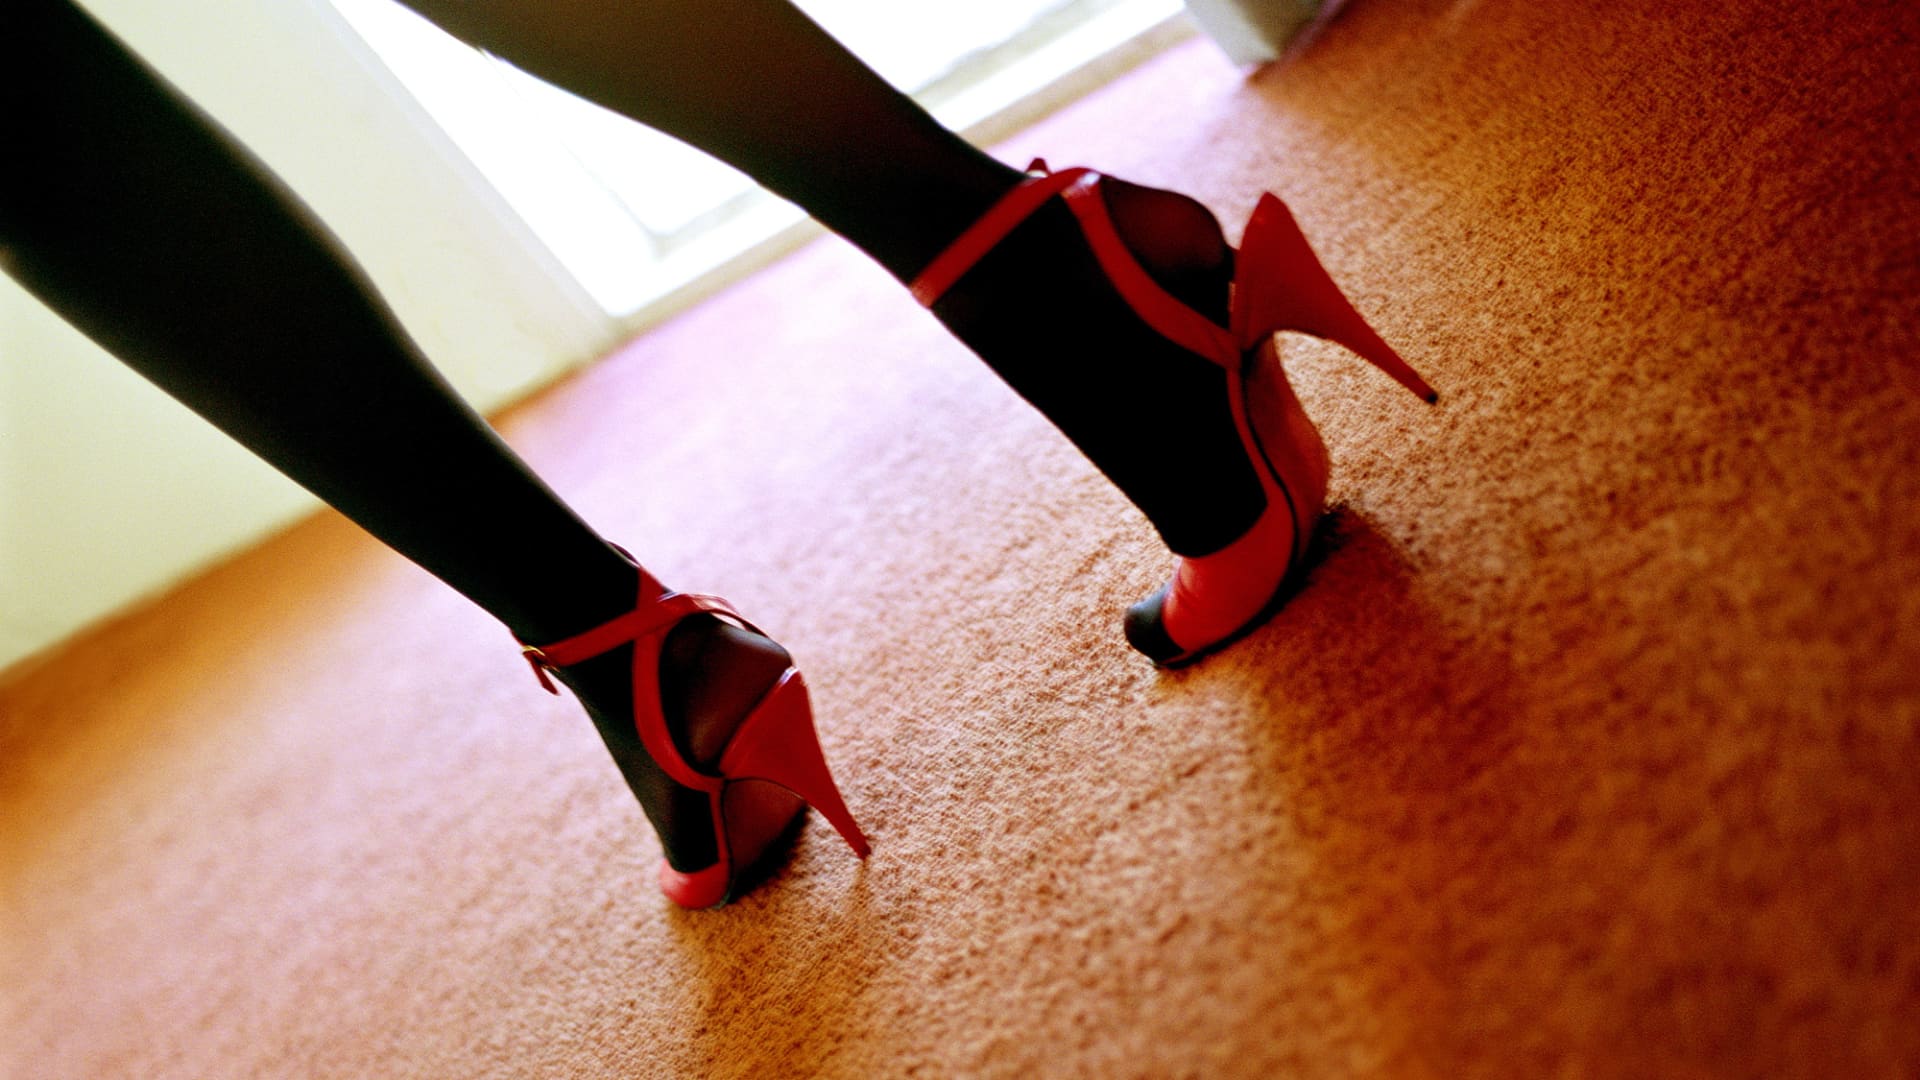 Christian Louboutin: women don't wear high heels to please men